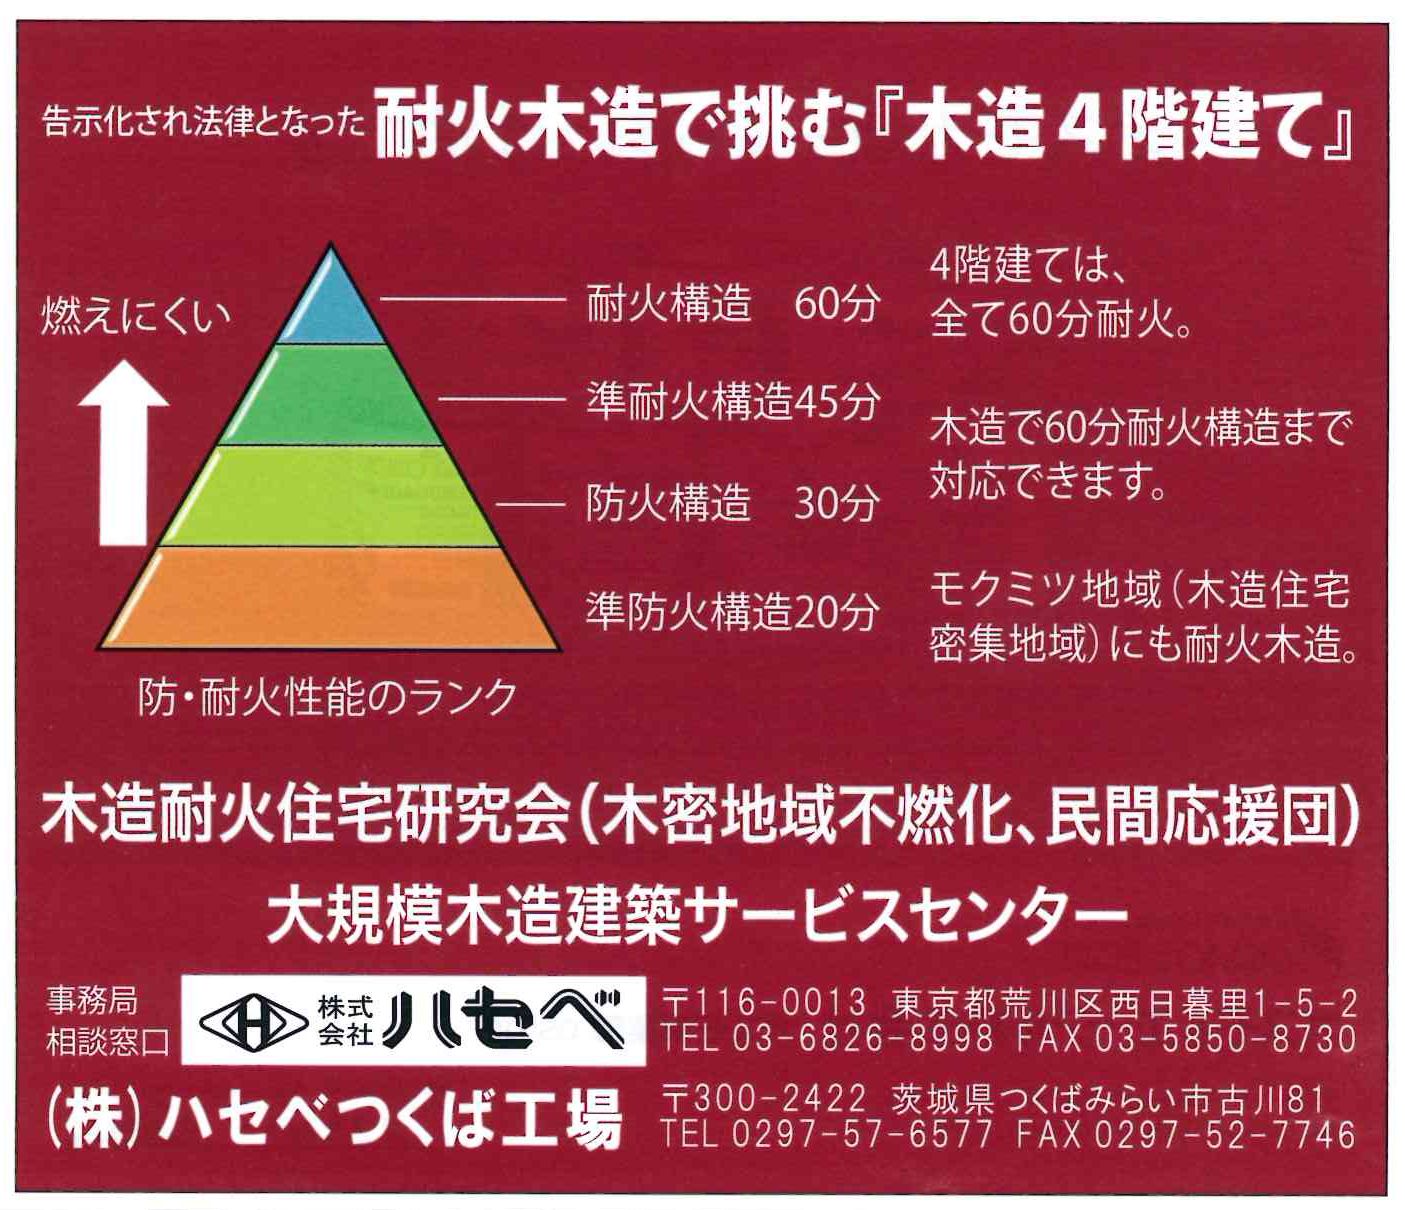 20150730日刊木材新聞-ハセベ広告